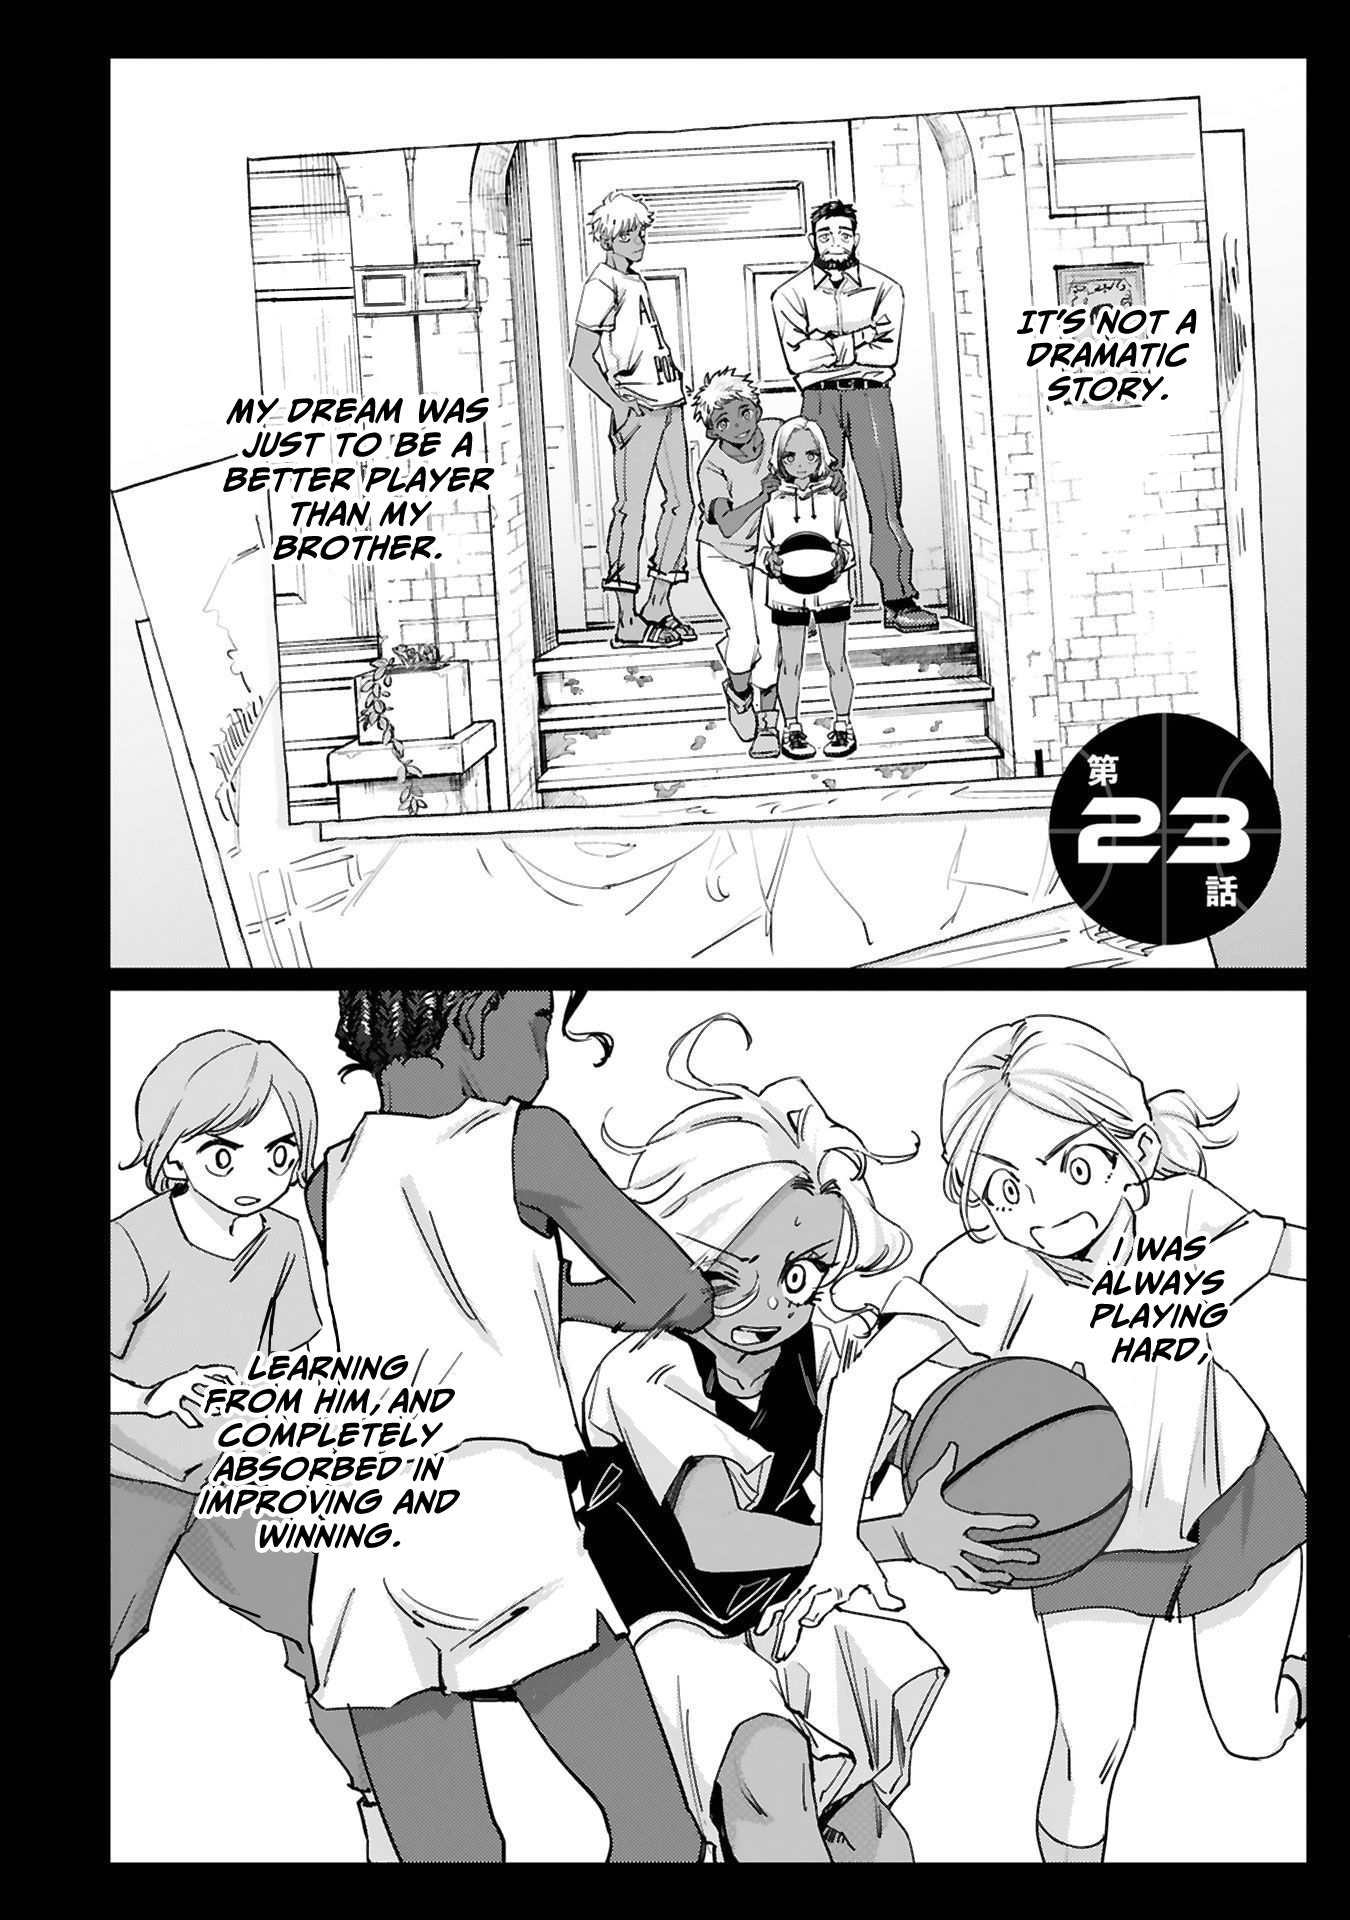 Tsubame Tip Off! - Page 3